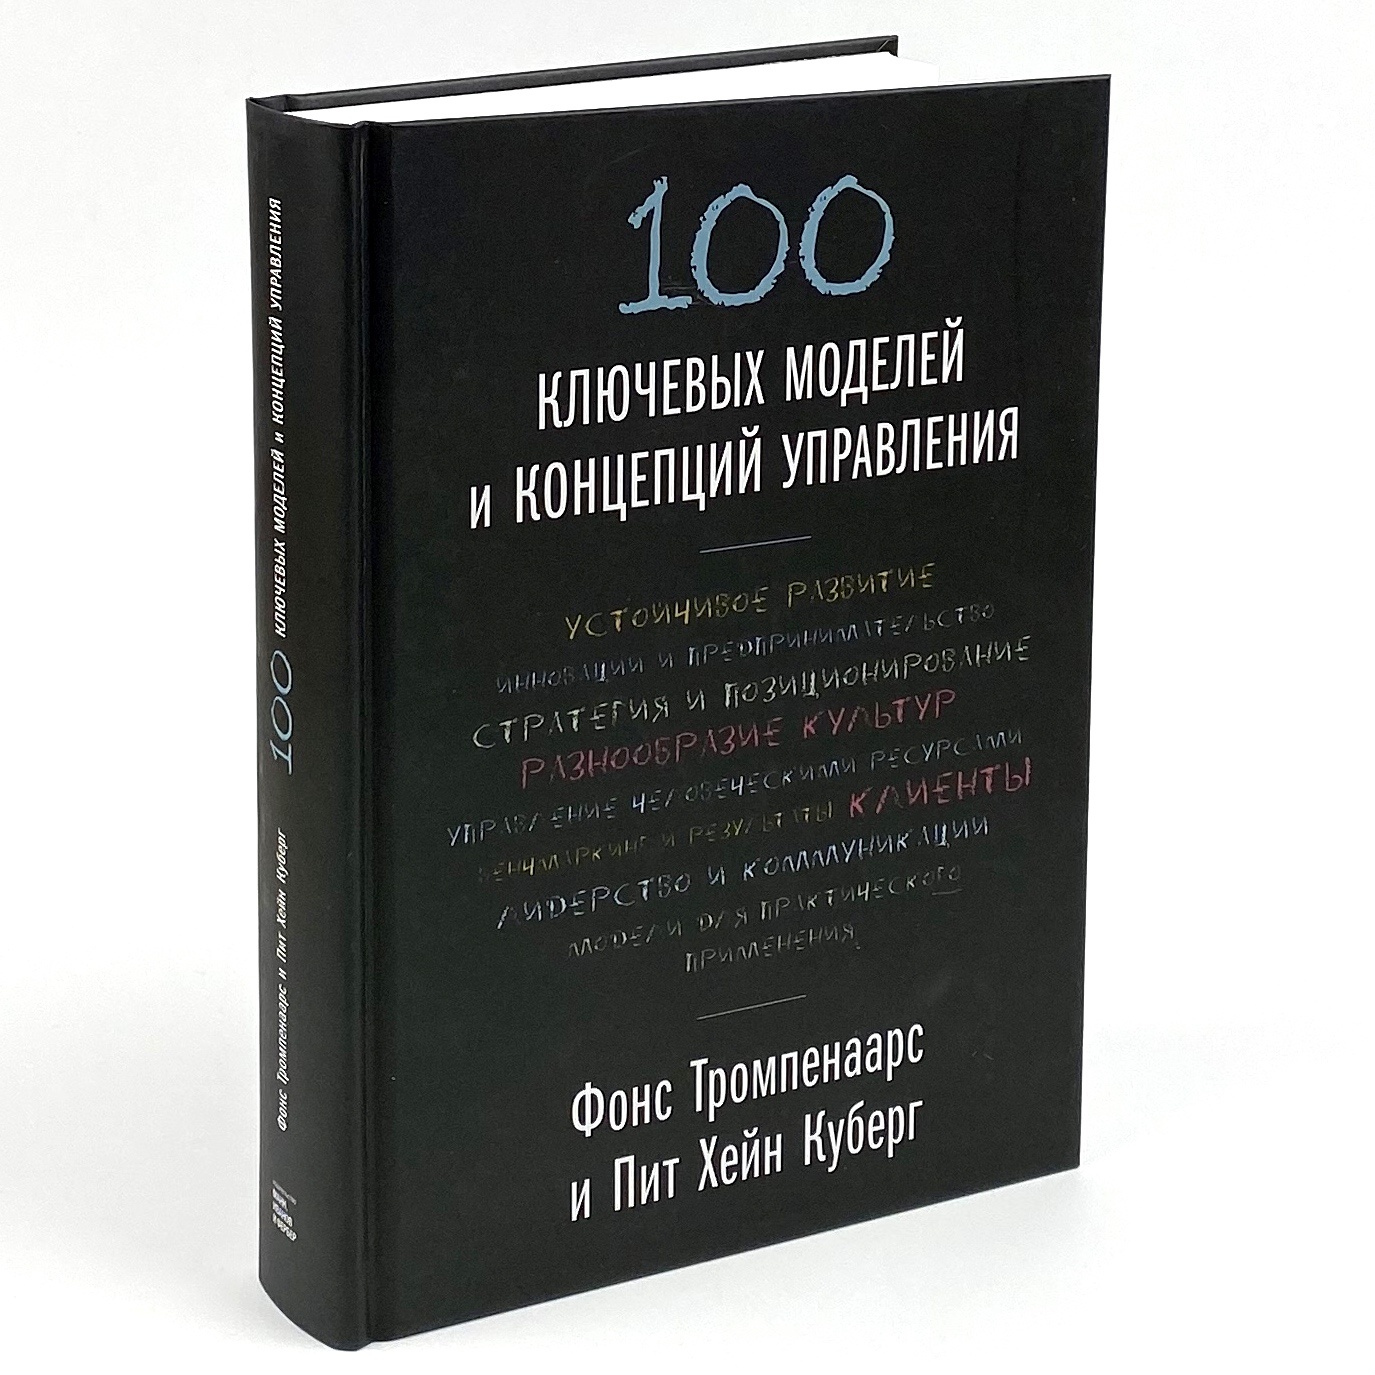 100 ключевых моделей и концепций управления . Автор — Фонс Тромпенаарс, Пит Хэйн Кеберг. 